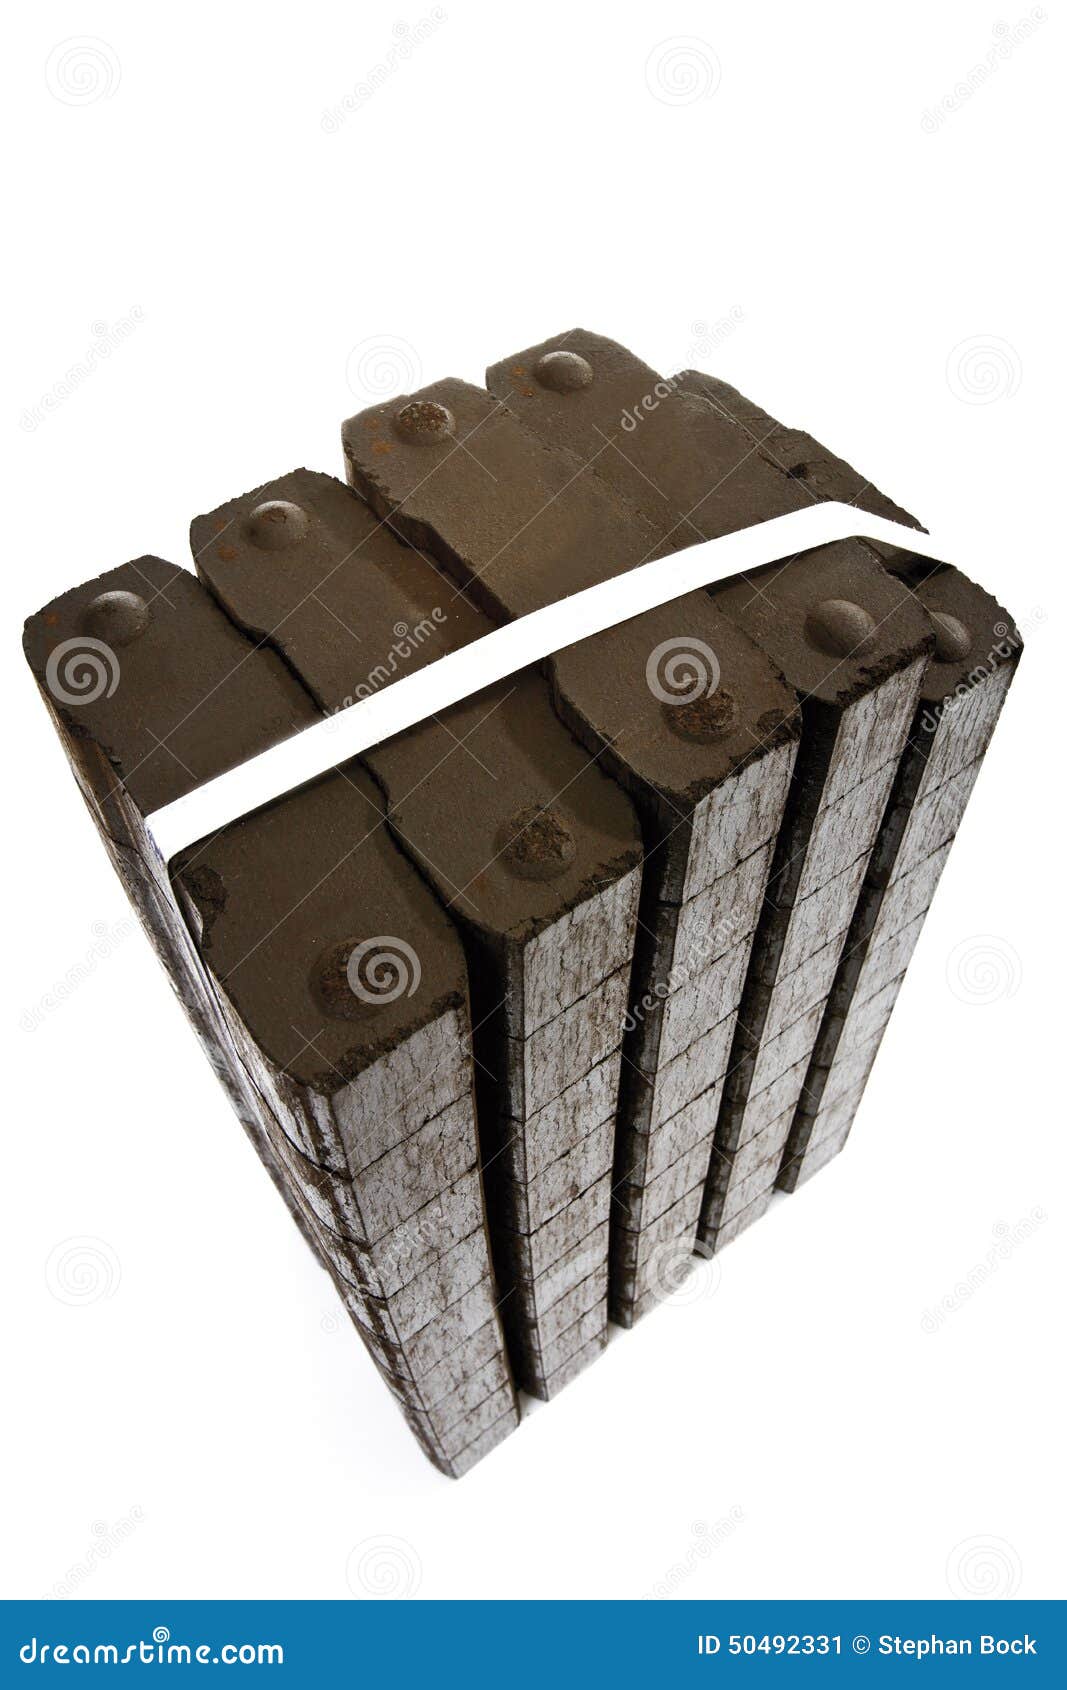 Briquettes de lignite image stock. Image du groupe, écologie - 50492331